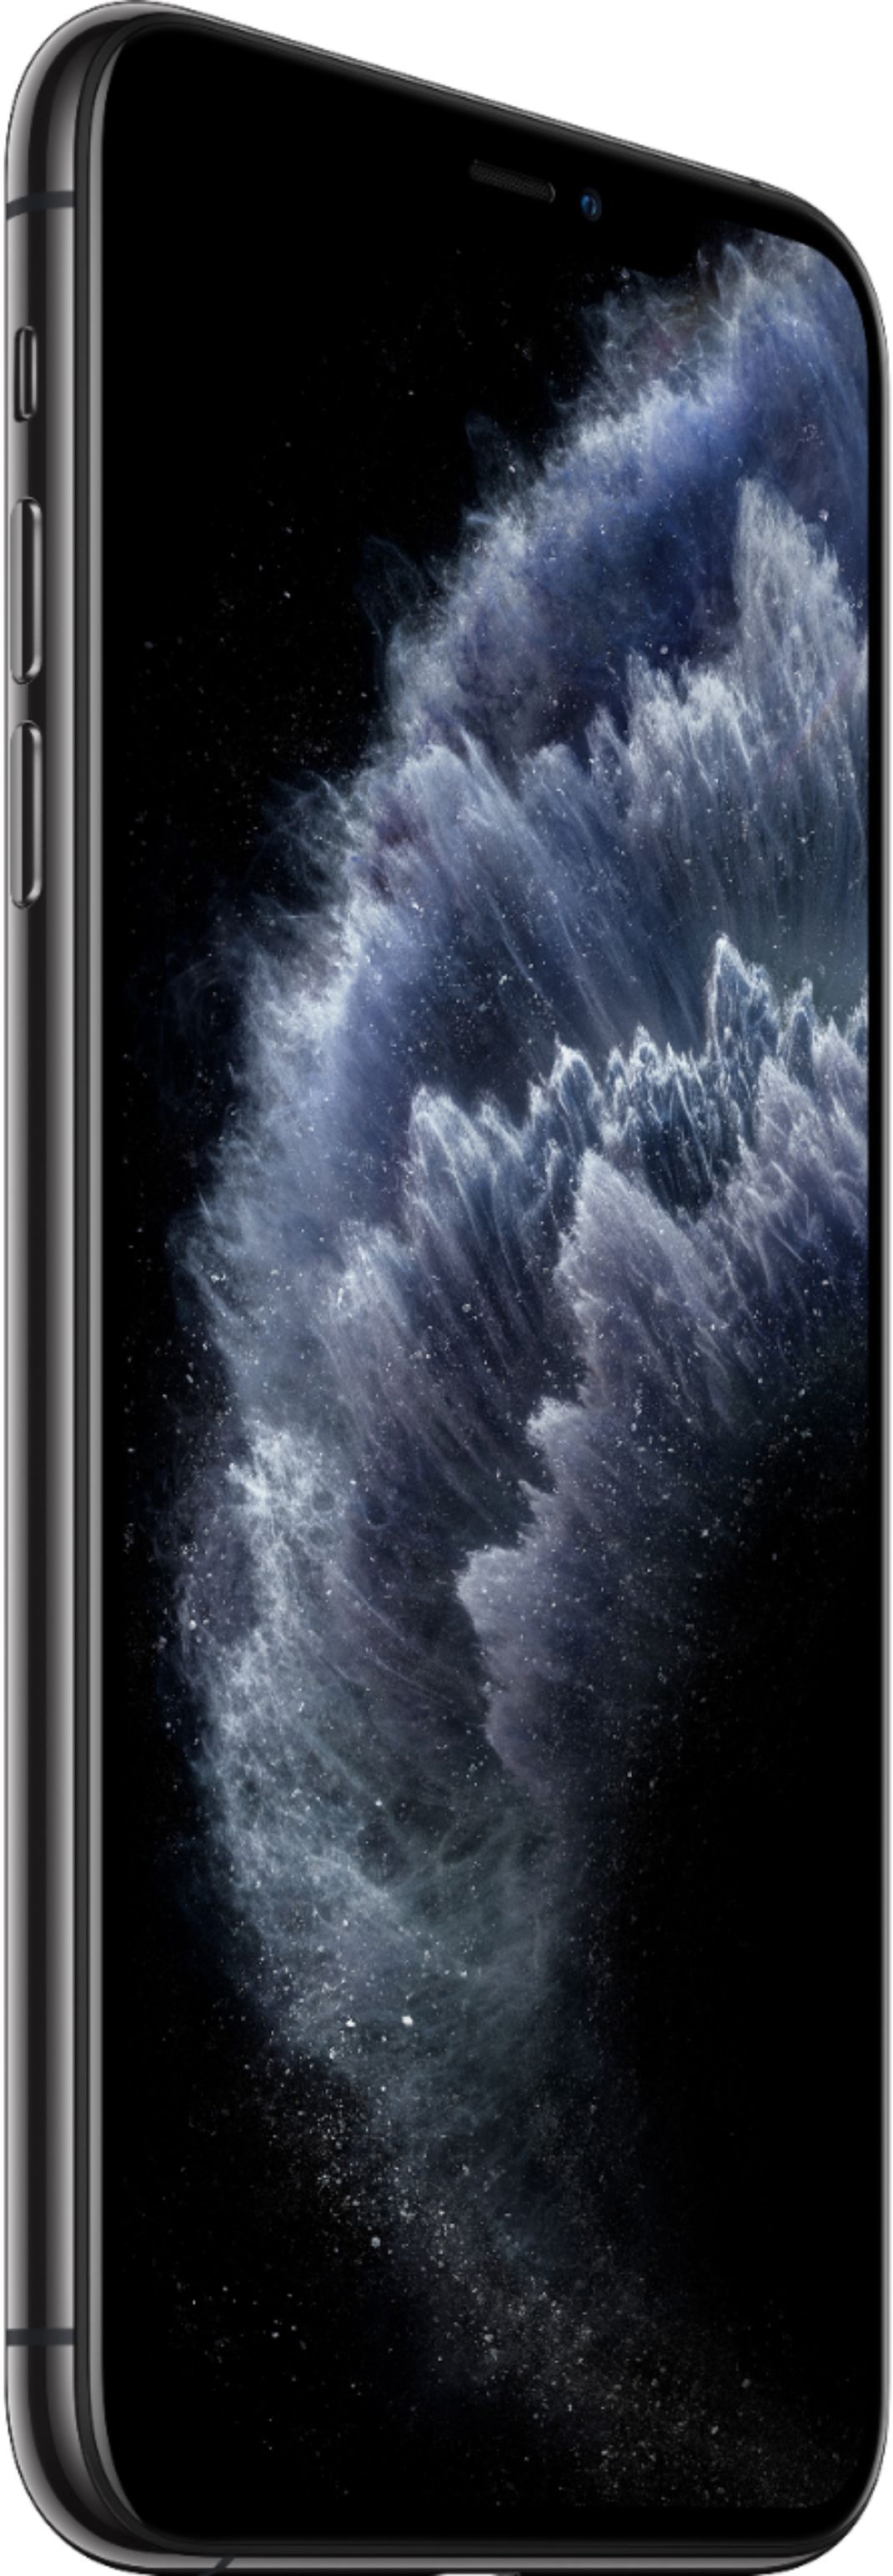 スマートフォン/携帯電話 スマートフォン本体 Best Buy: Apple iPhone 11 Pro Max 256GB Space Gray (AT&T) MWH42LL/A